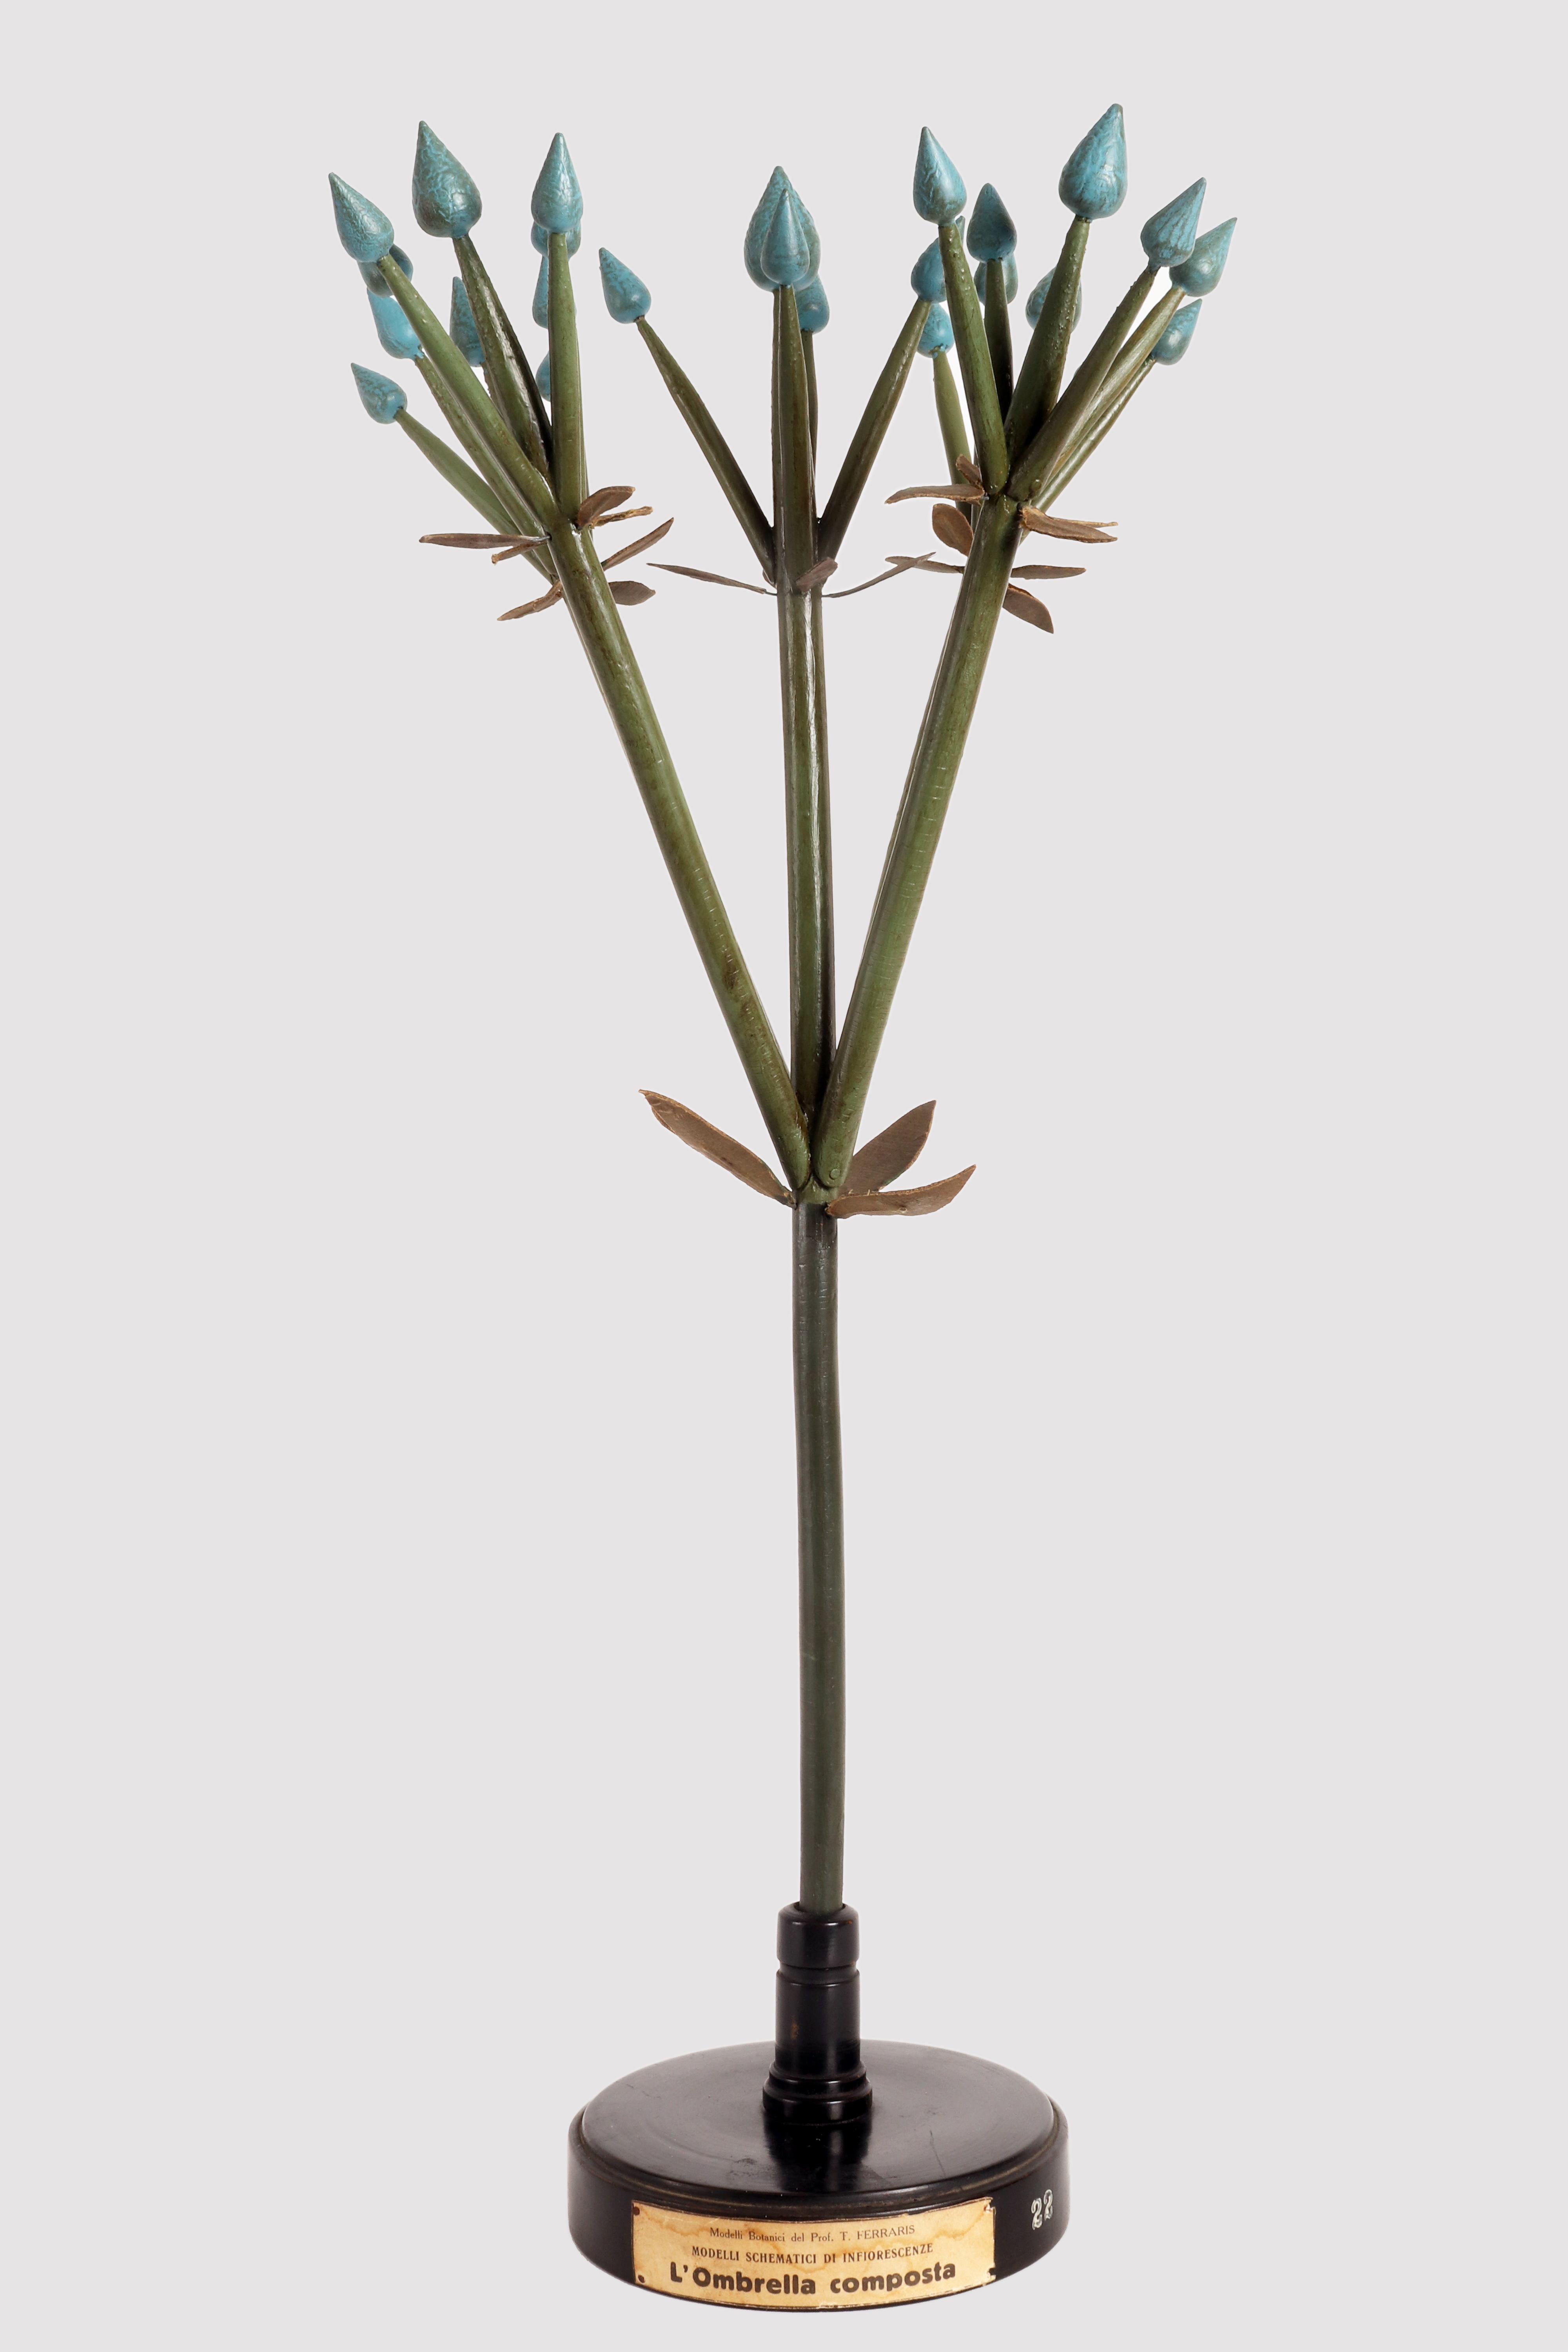 Un modèle didactique botanique rare d'un type de spécimen d'inflorescence, la Spiga, réalisé à partir de gemmes en plâtre coloré peintes à la main, de branches en bois et d'éléments en papier mâché peint. Monté sur un socle rond en bois noir, peint